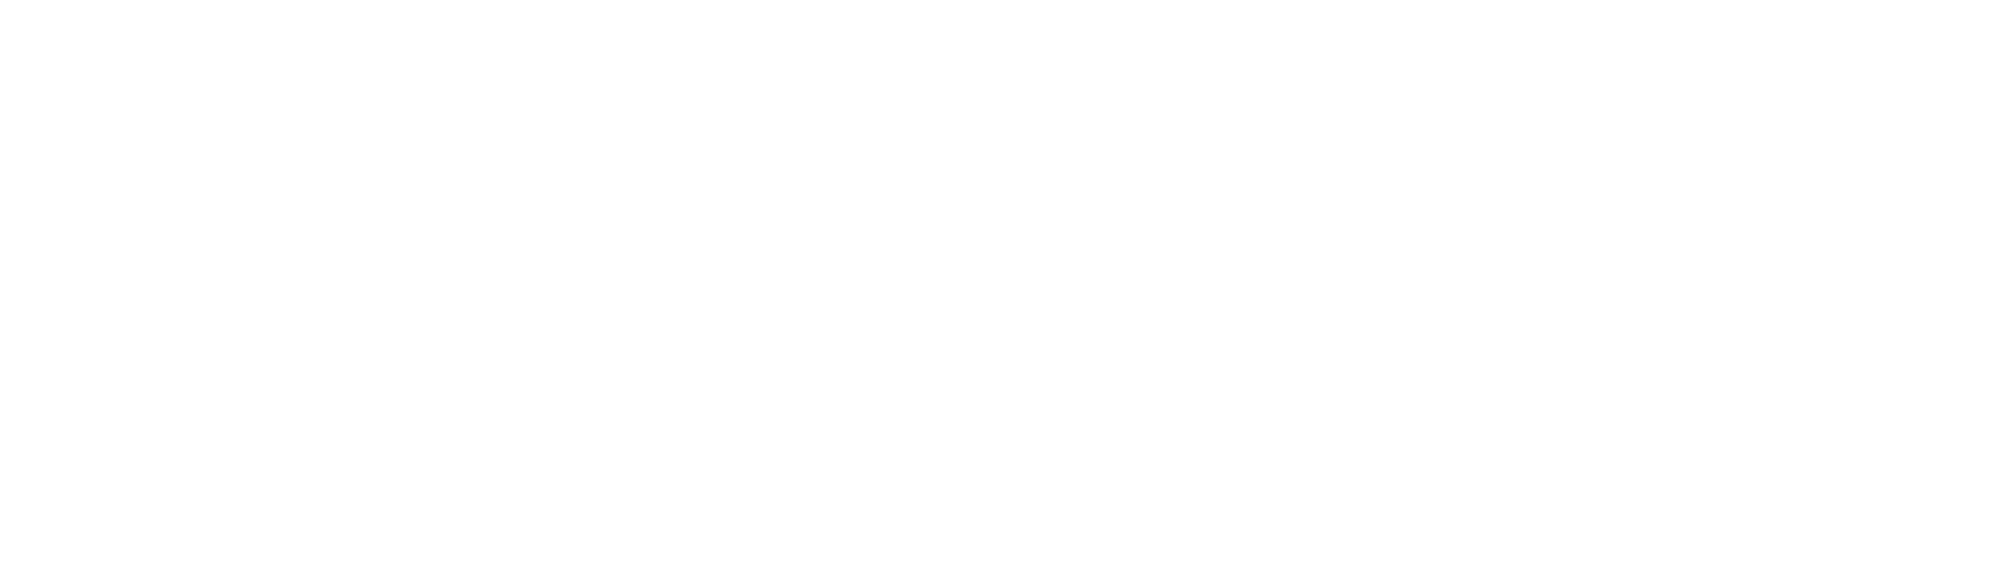 www.fritz-kola.de